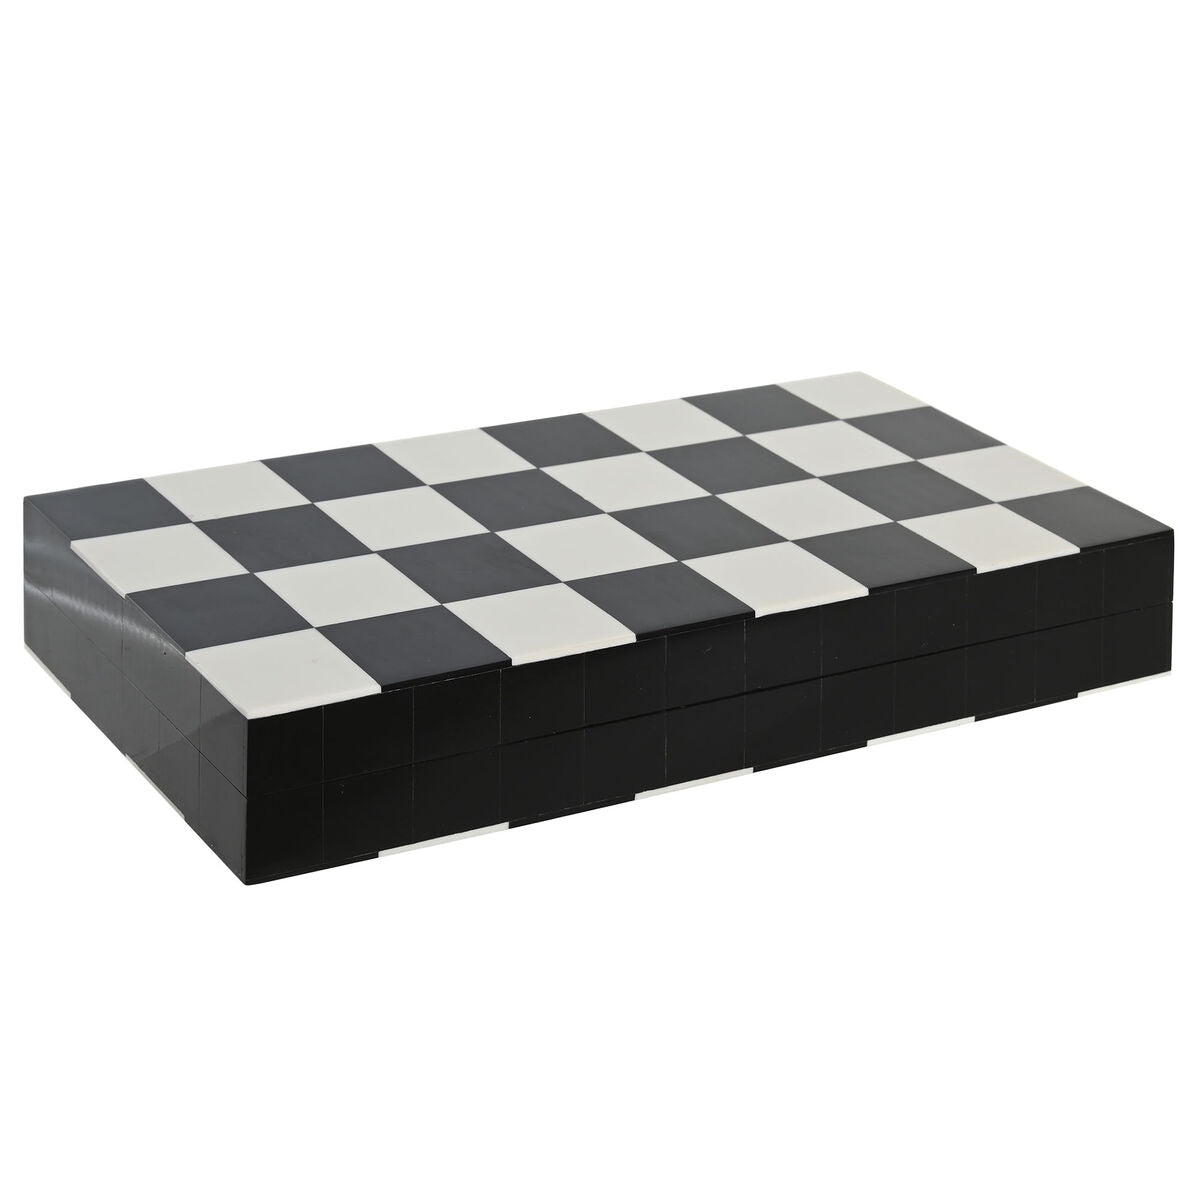 Minimalūs šachmatai 30,5 x 31 x 3 cm